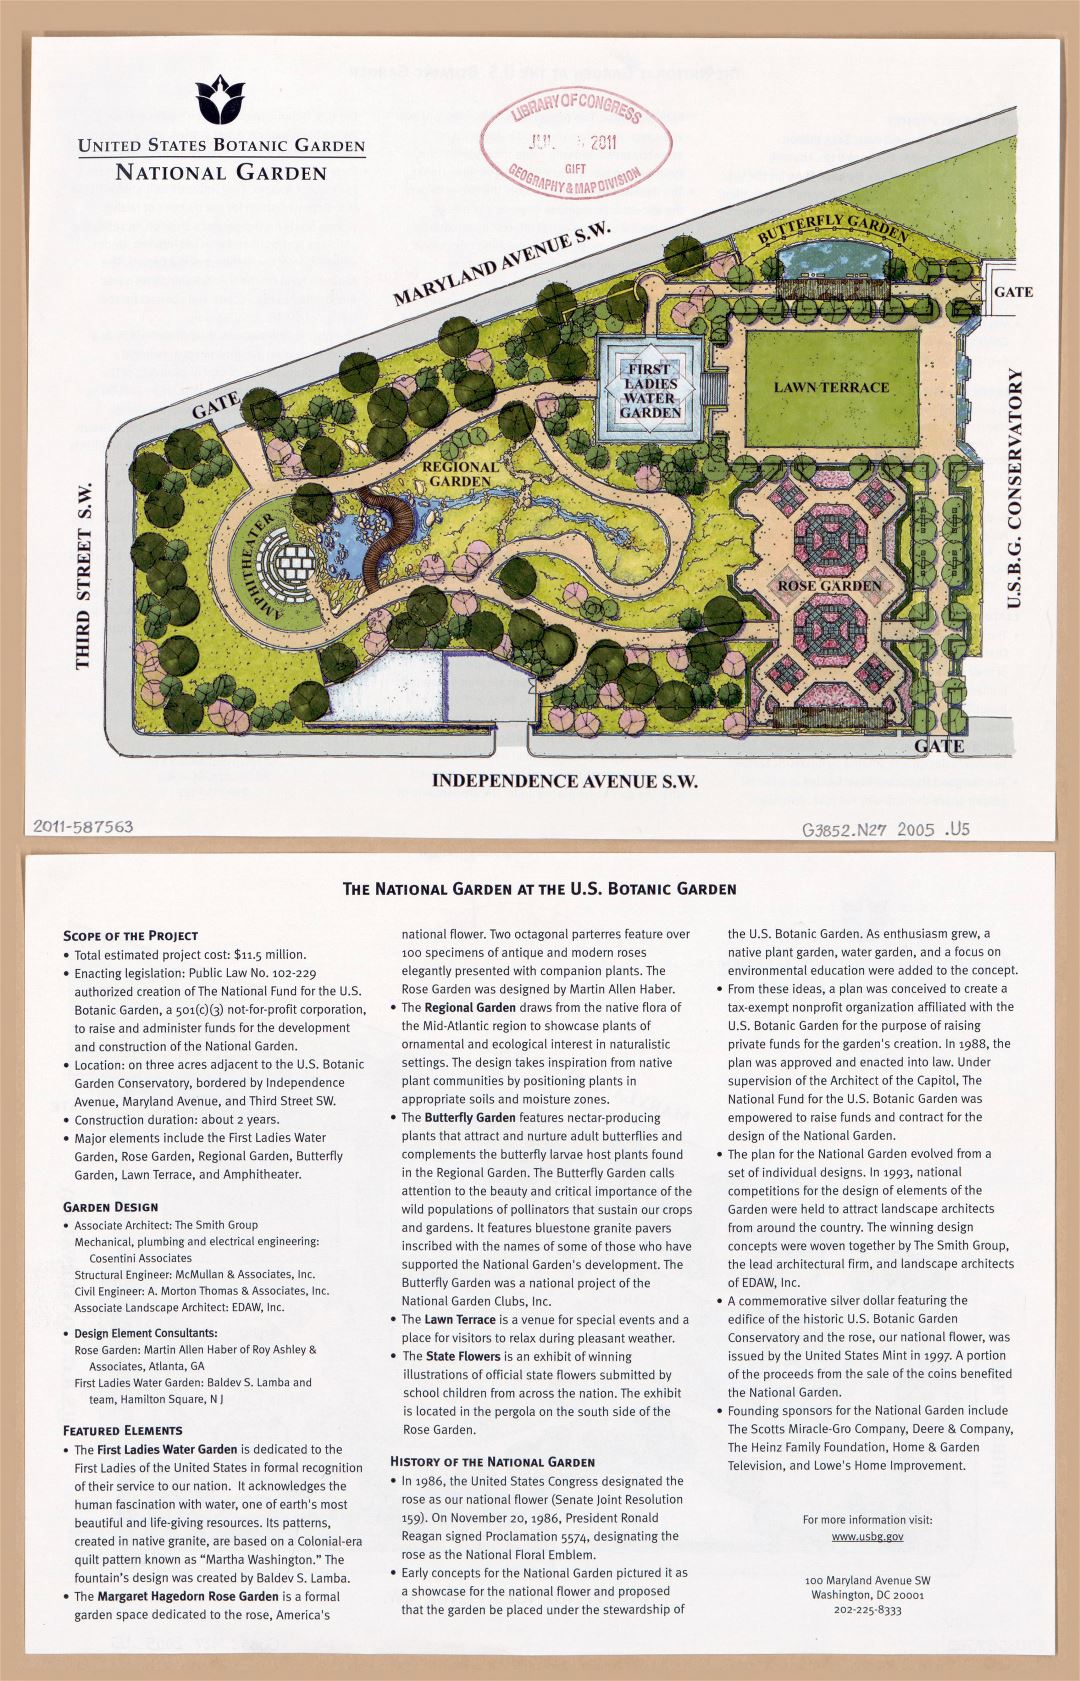 Large detailed map of United States Botanic Garden, National Garden, Washington D.C. - 2005